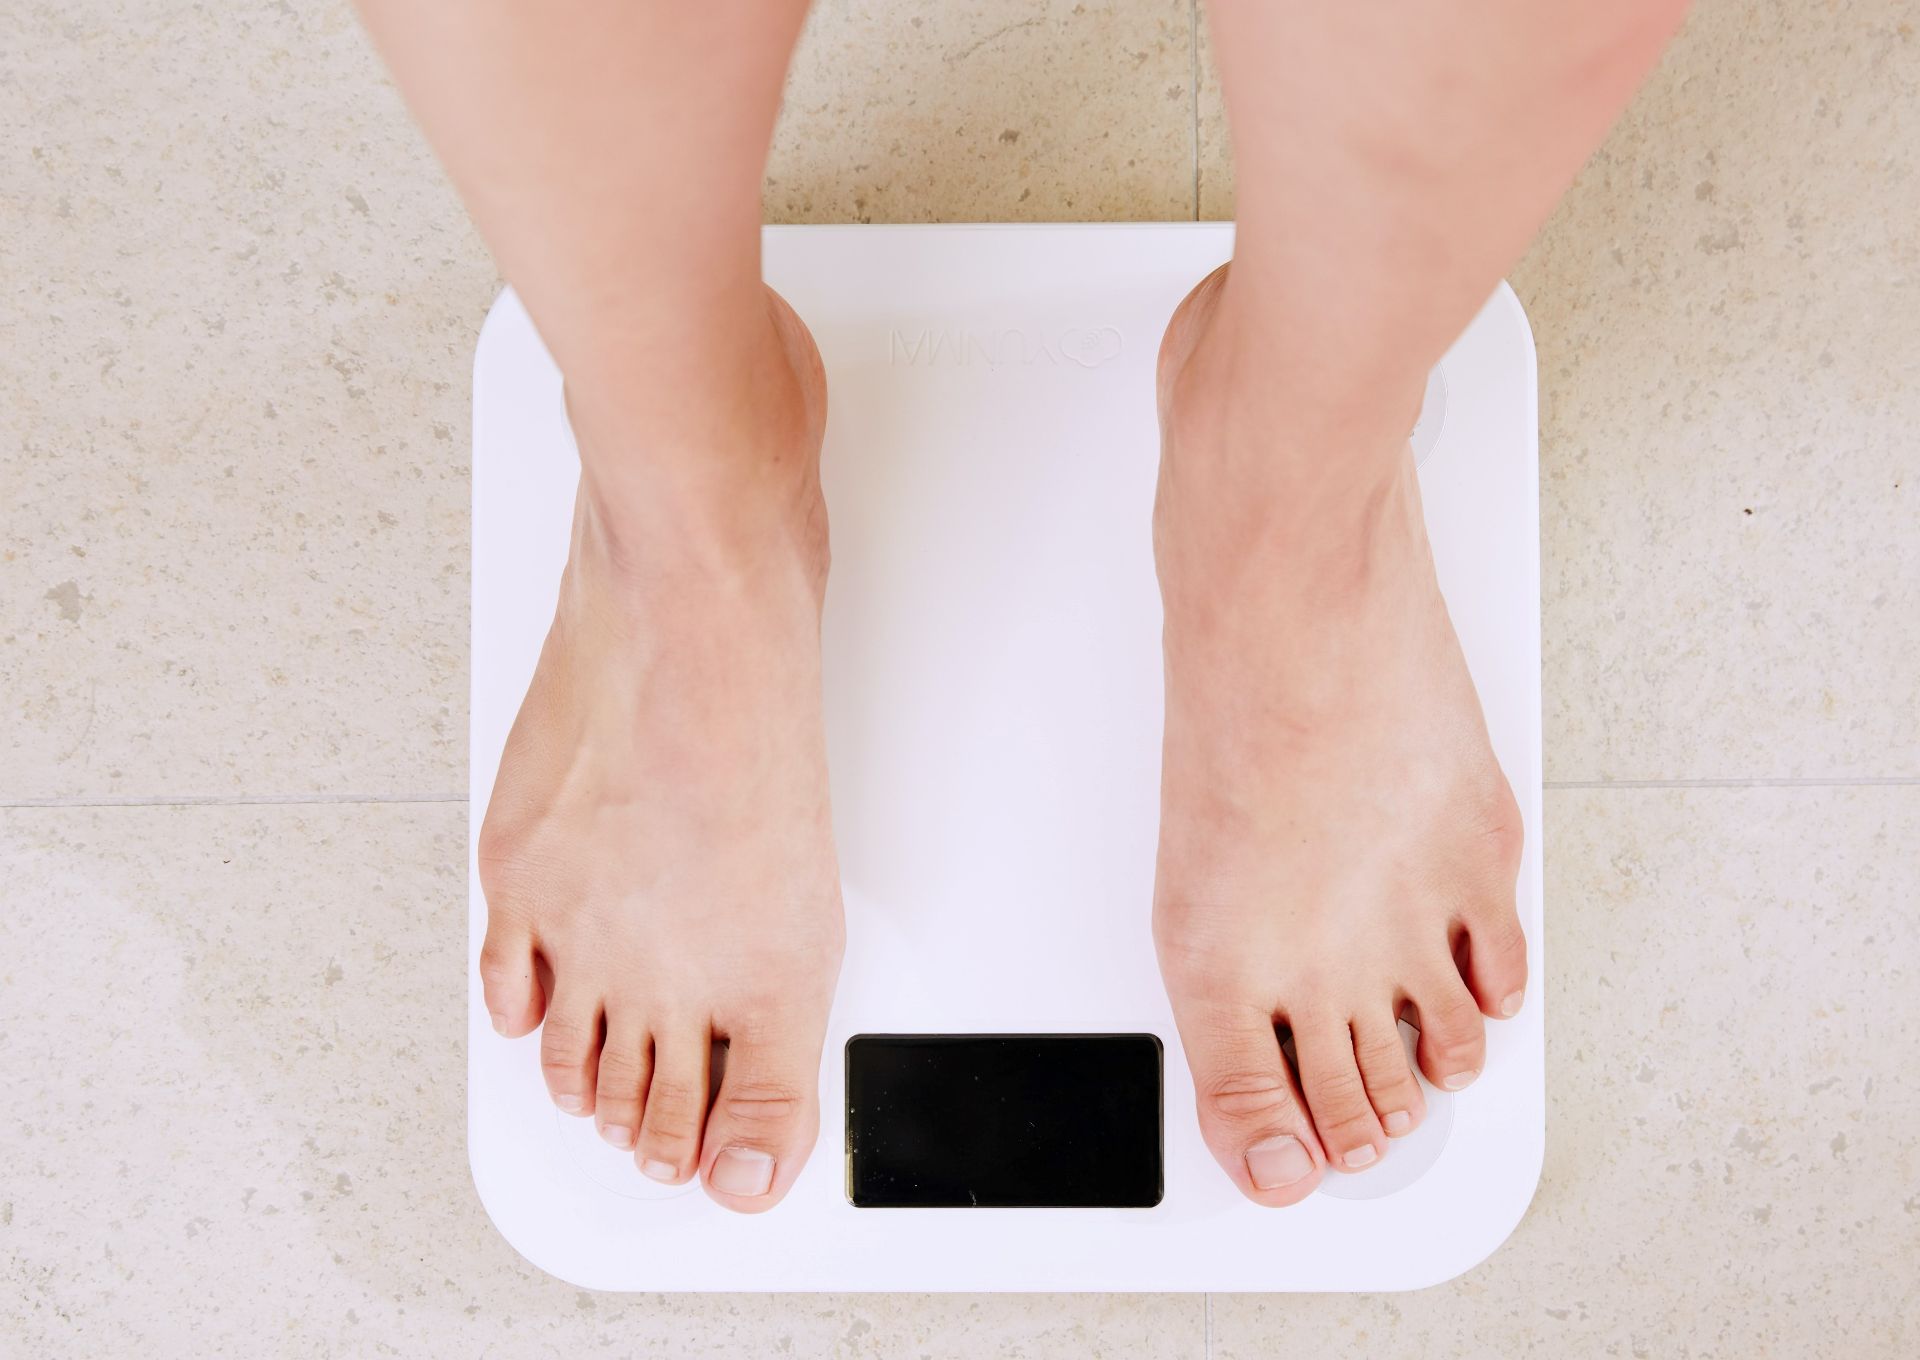 Obezitate: un nou tratament dă rezultate încurajatoare